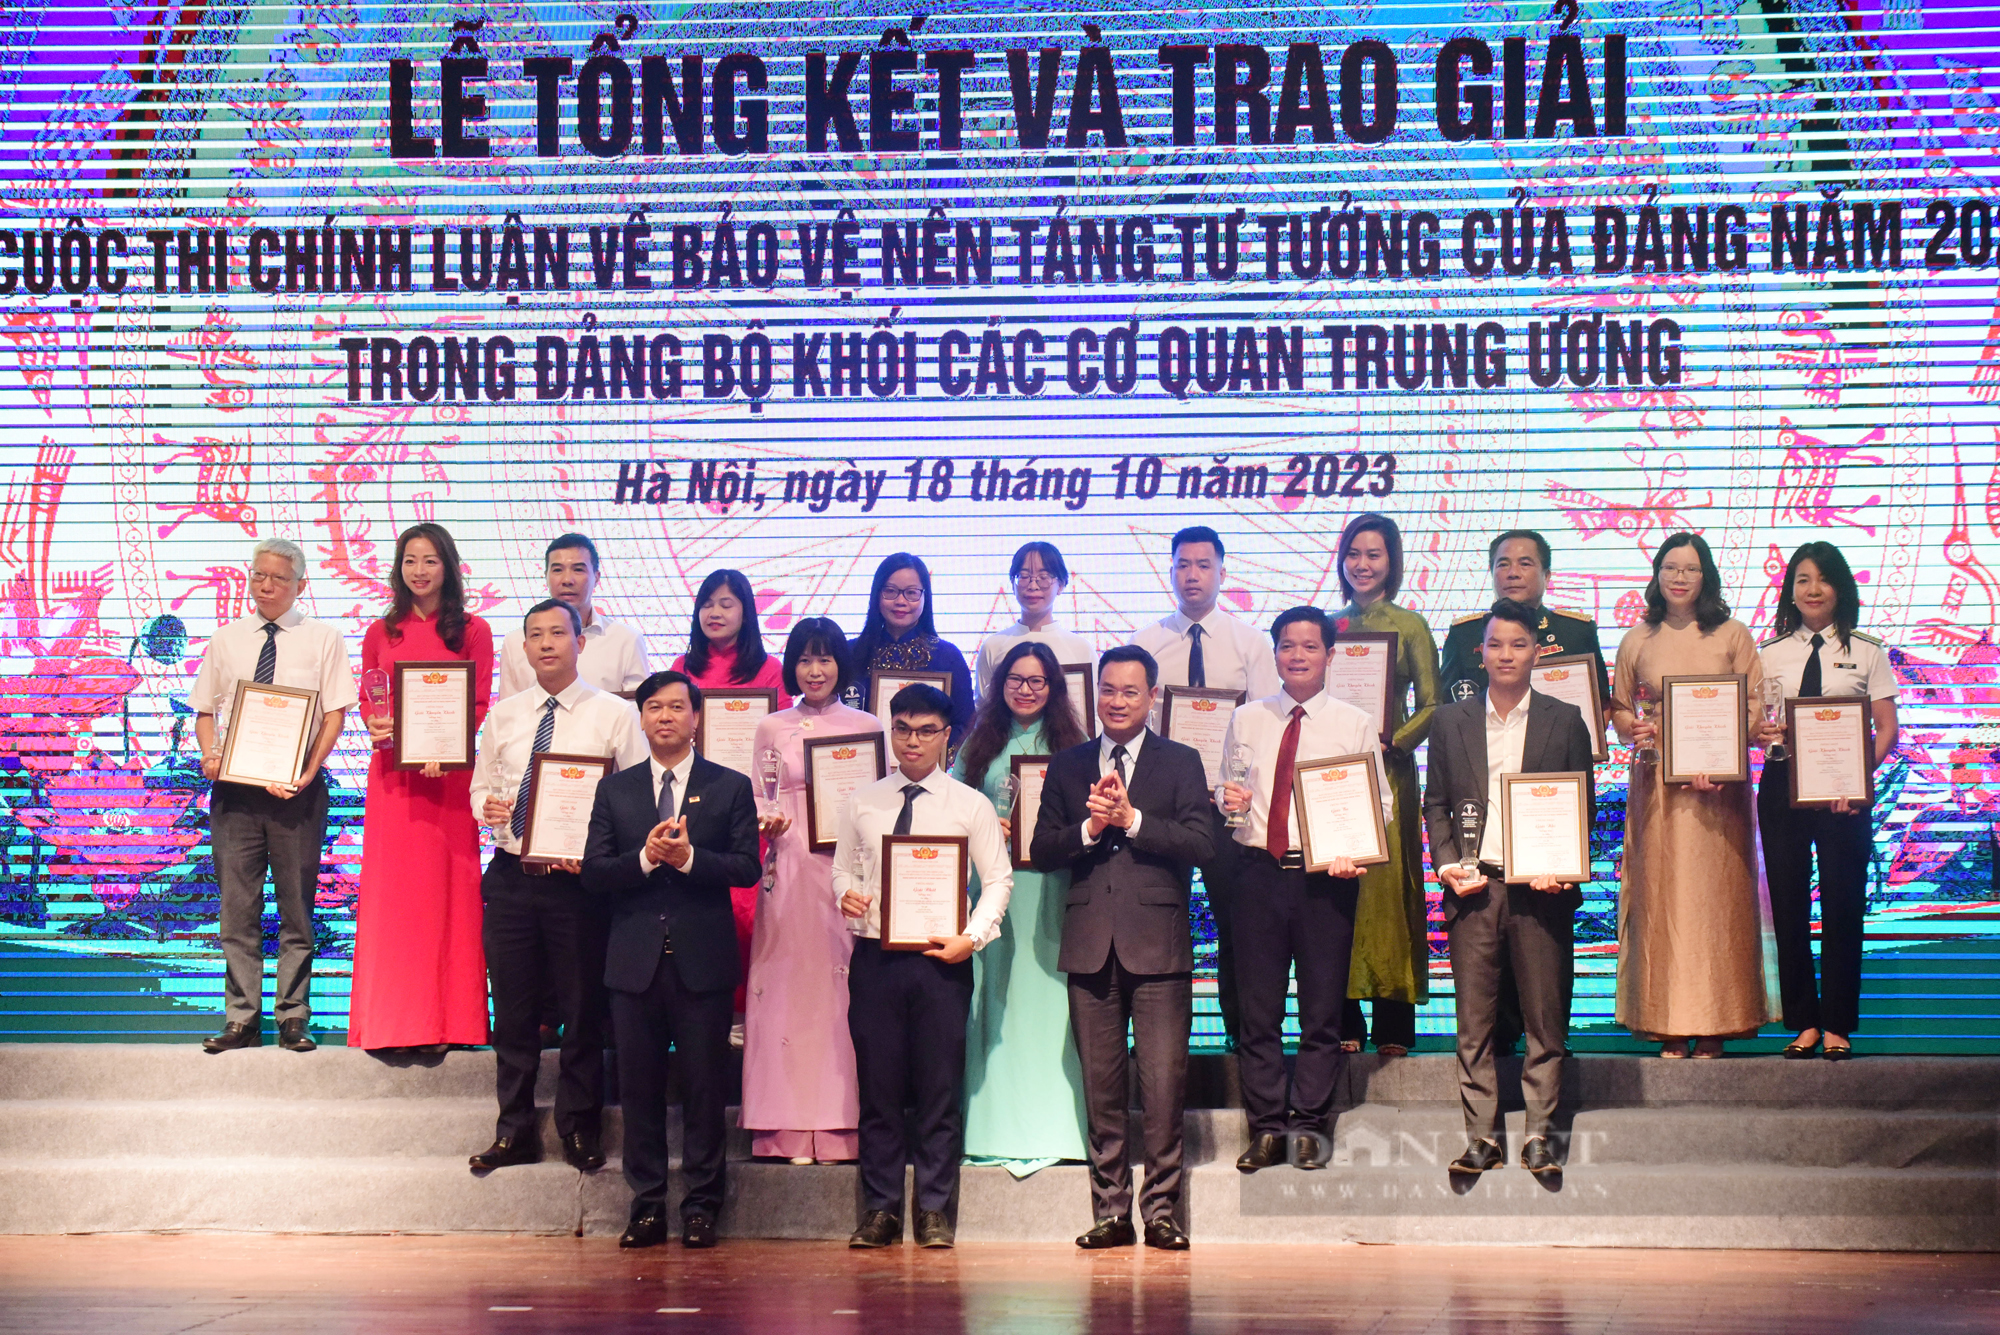 Trung ương Hội Nông dân Việt Nam đoạt 2 giải Cuộc thi chính luận về bảo vệ nền tảng tư tưởng của Đảng - Ảnh 1.